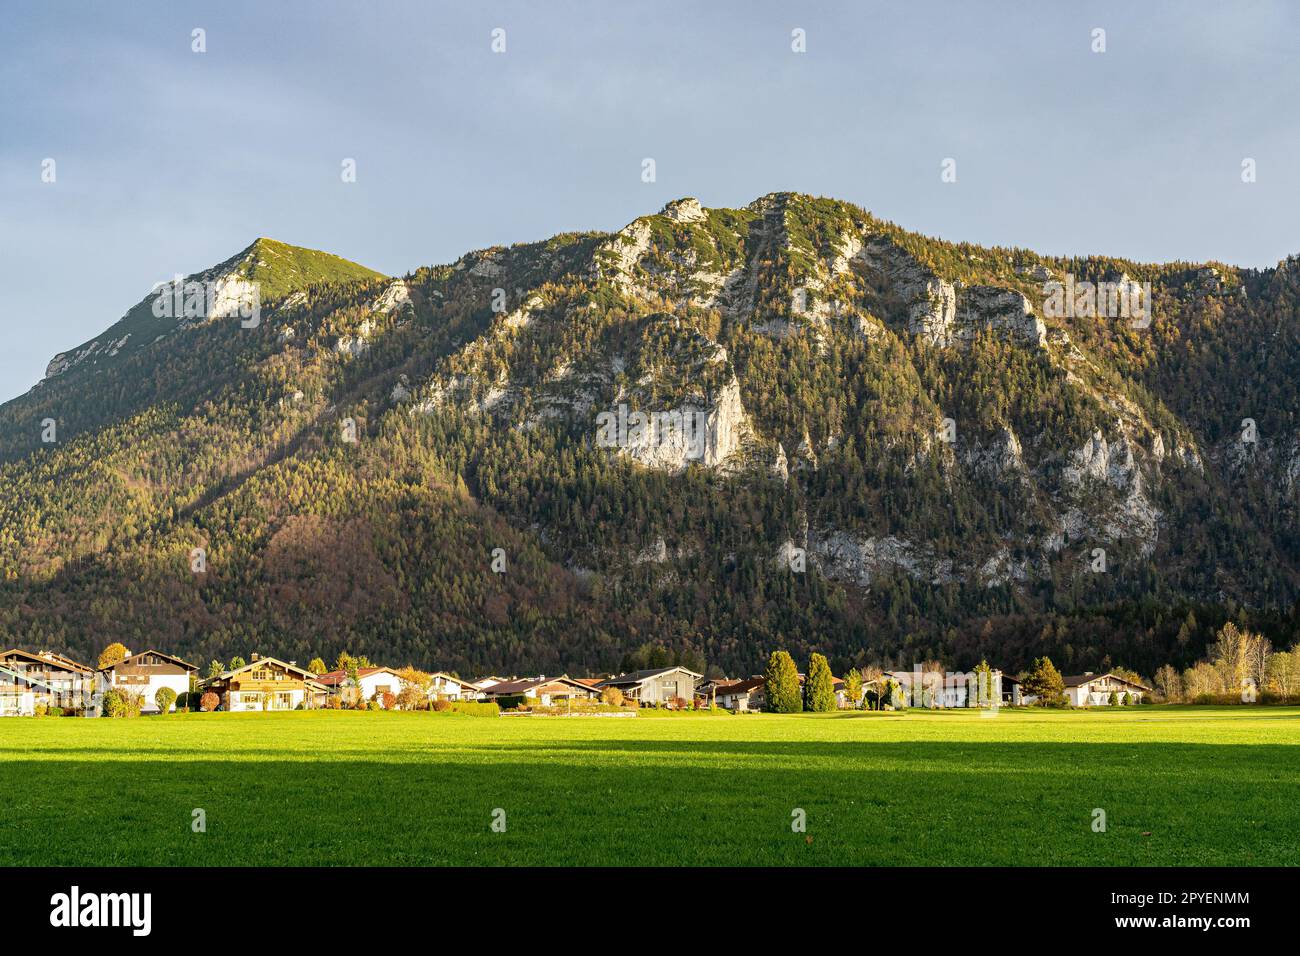 Catena montuosa massiccia, foresta e prati delle Alpi tedesche Foto Stock